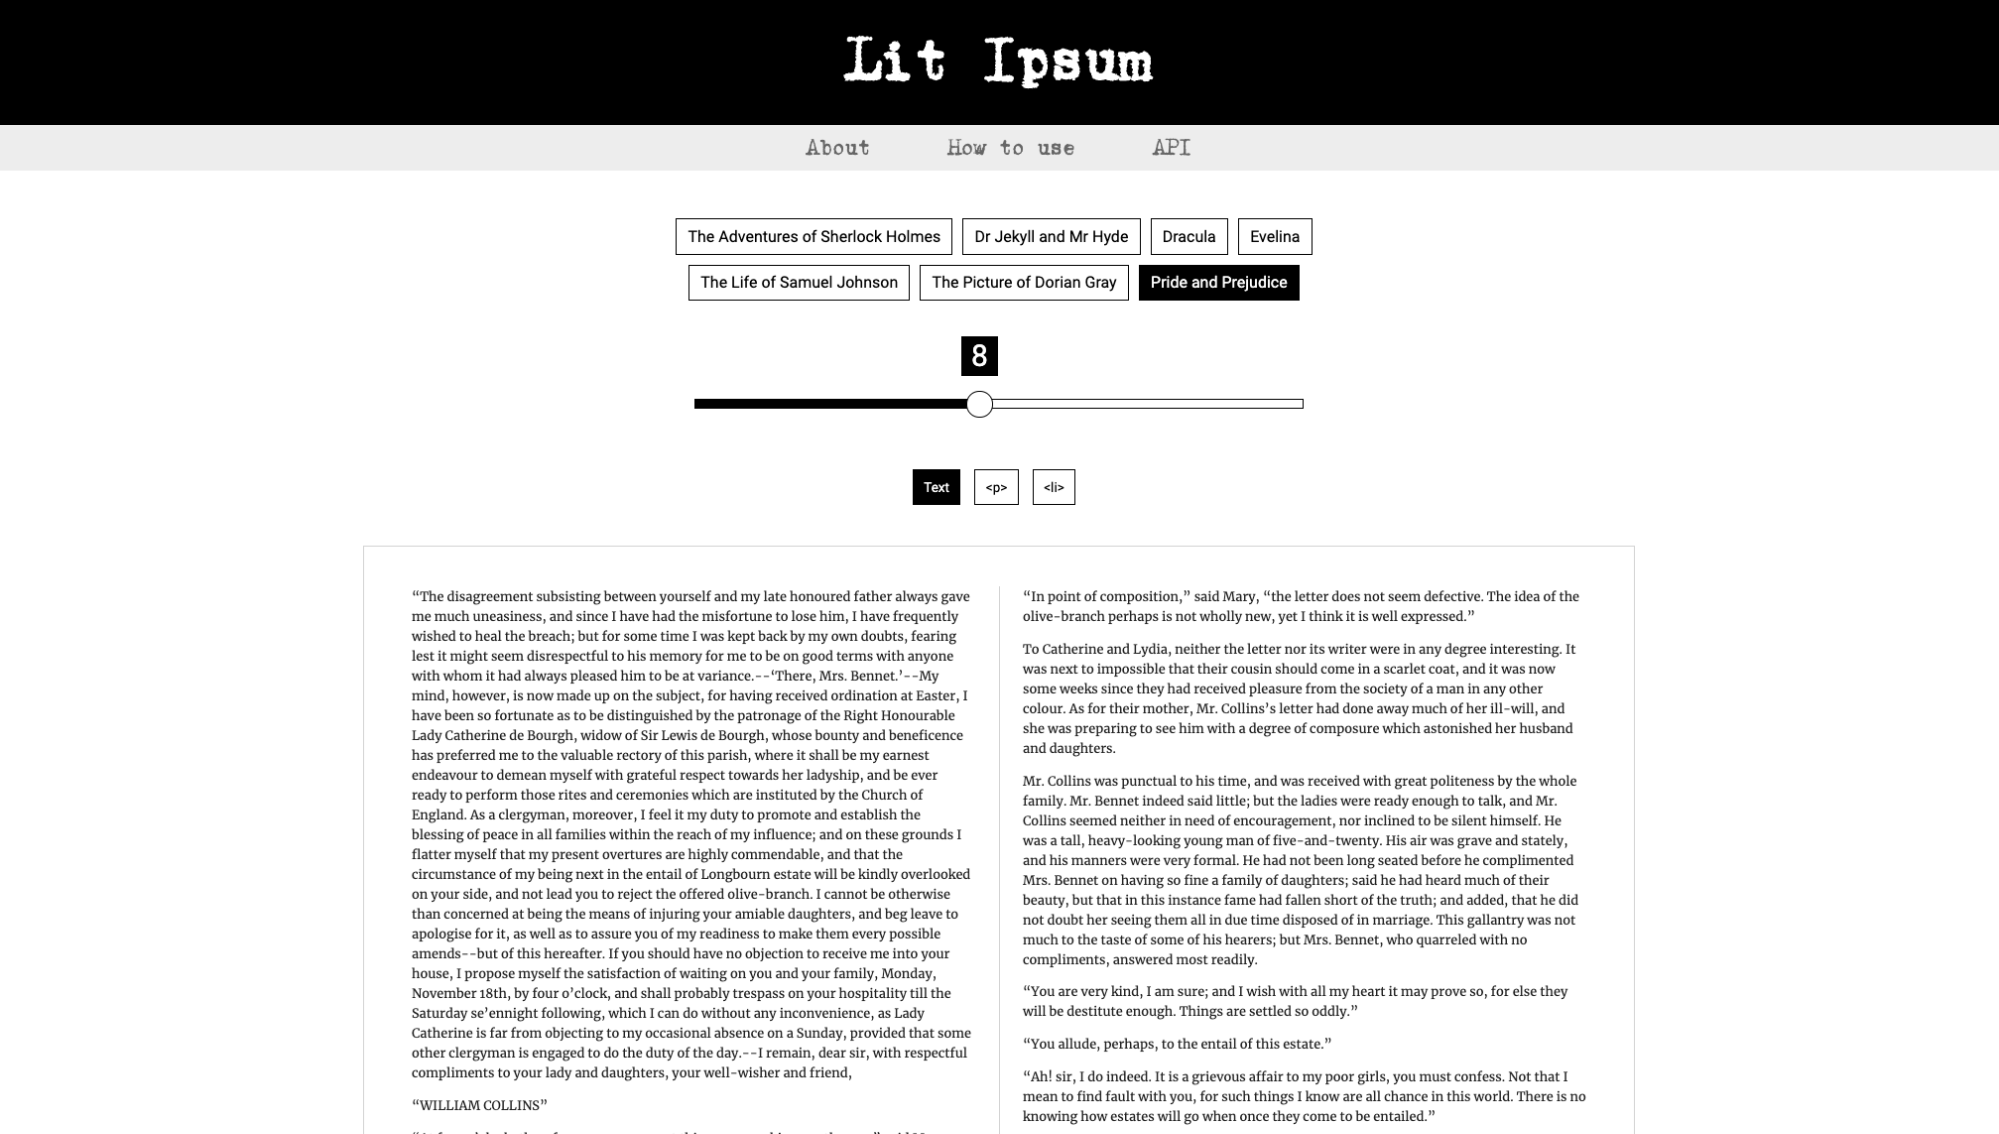 lorem ipsum generator: lit